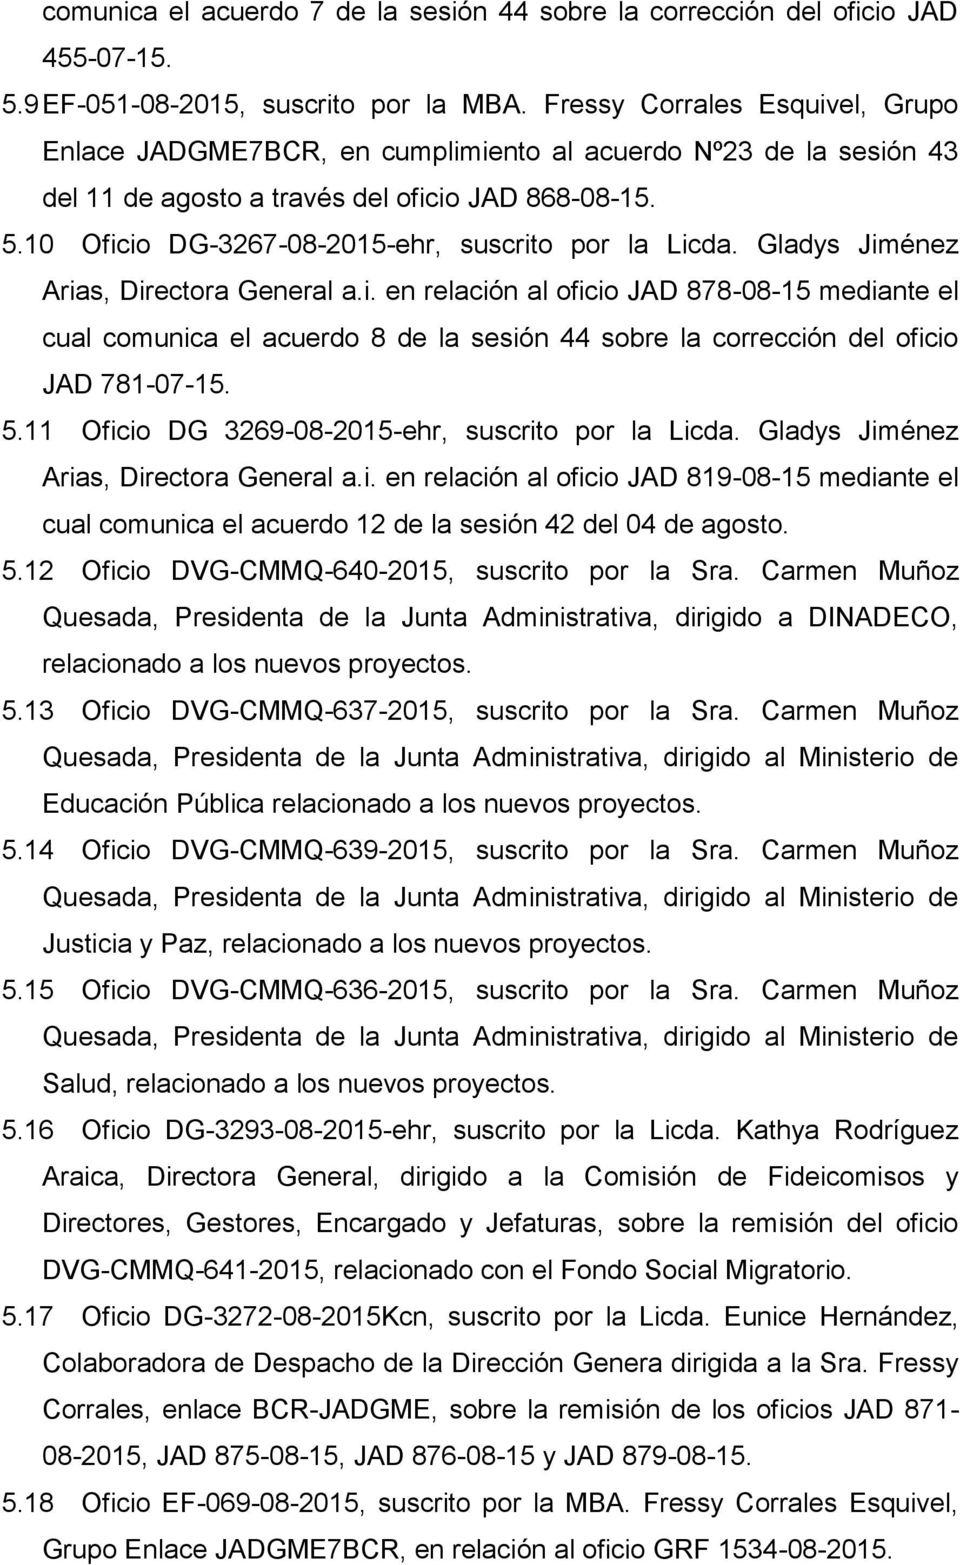 10 Oficio DG-3267-08-2015-ehr, suscrito por la Licda. Gladys Jiménez Arias, Directora General a.i. en relación al oficio JAD 878-08-15 mediante el cual comunica el acuerdo 8 de la sesión 44 sobre la corrección del oficio JAD 781-07-15.